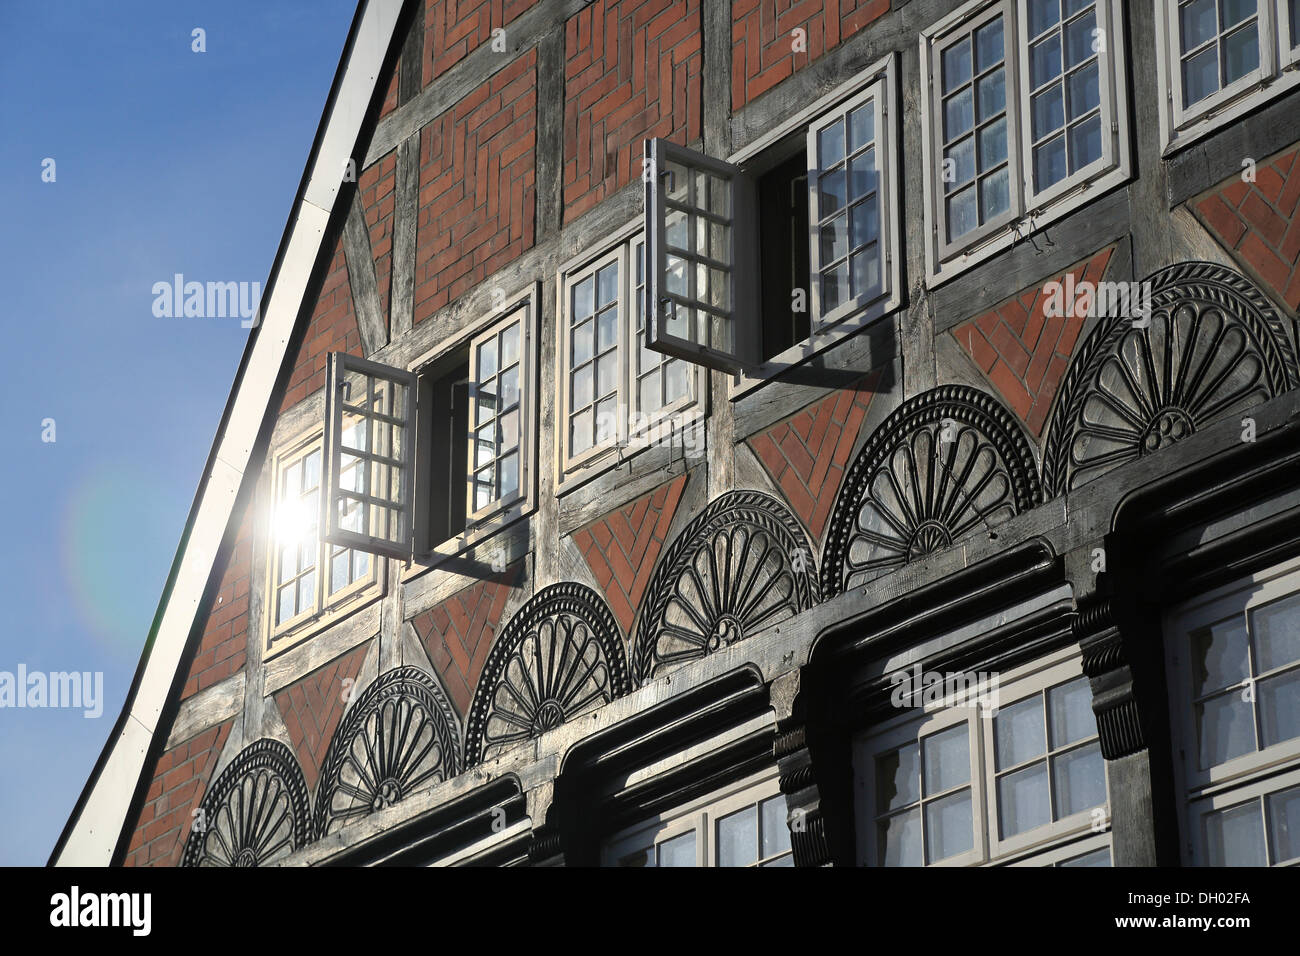 Fenster An Einem Fachwerkhaus Stockfotos und -bilder Kaufen - Alamy